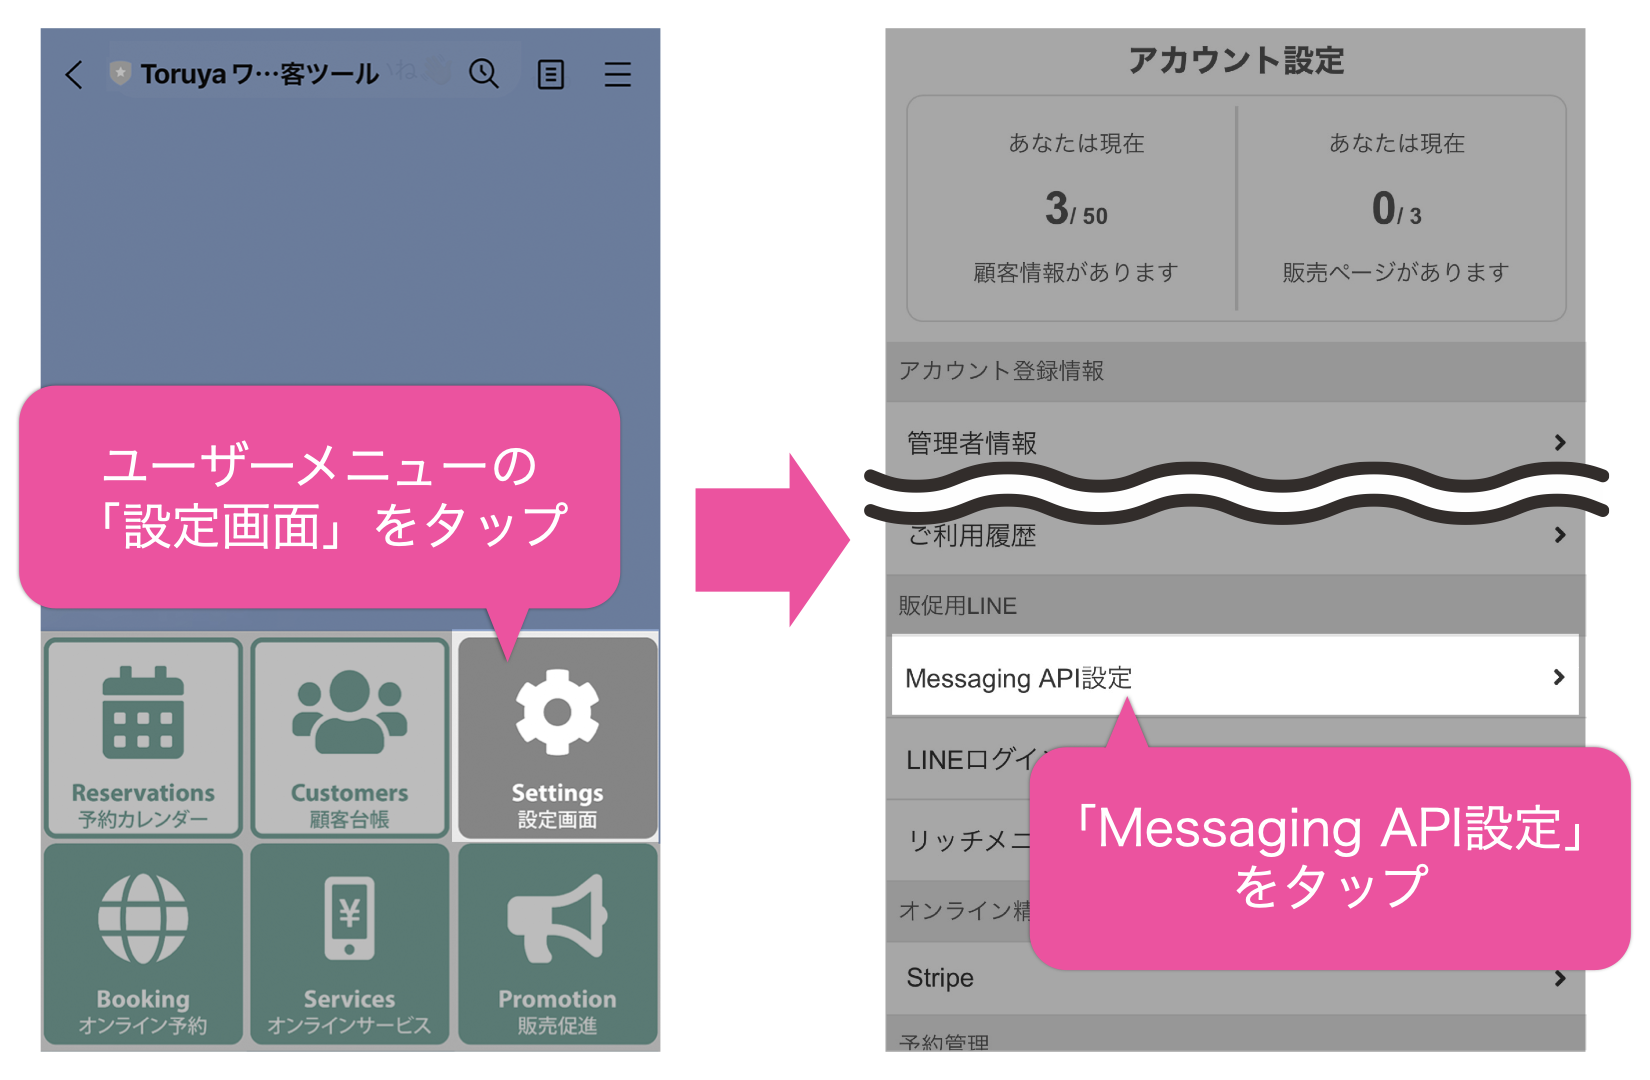 ユーザーメニューの「設定画面」をタップ→「Messaging API設定」をタップ